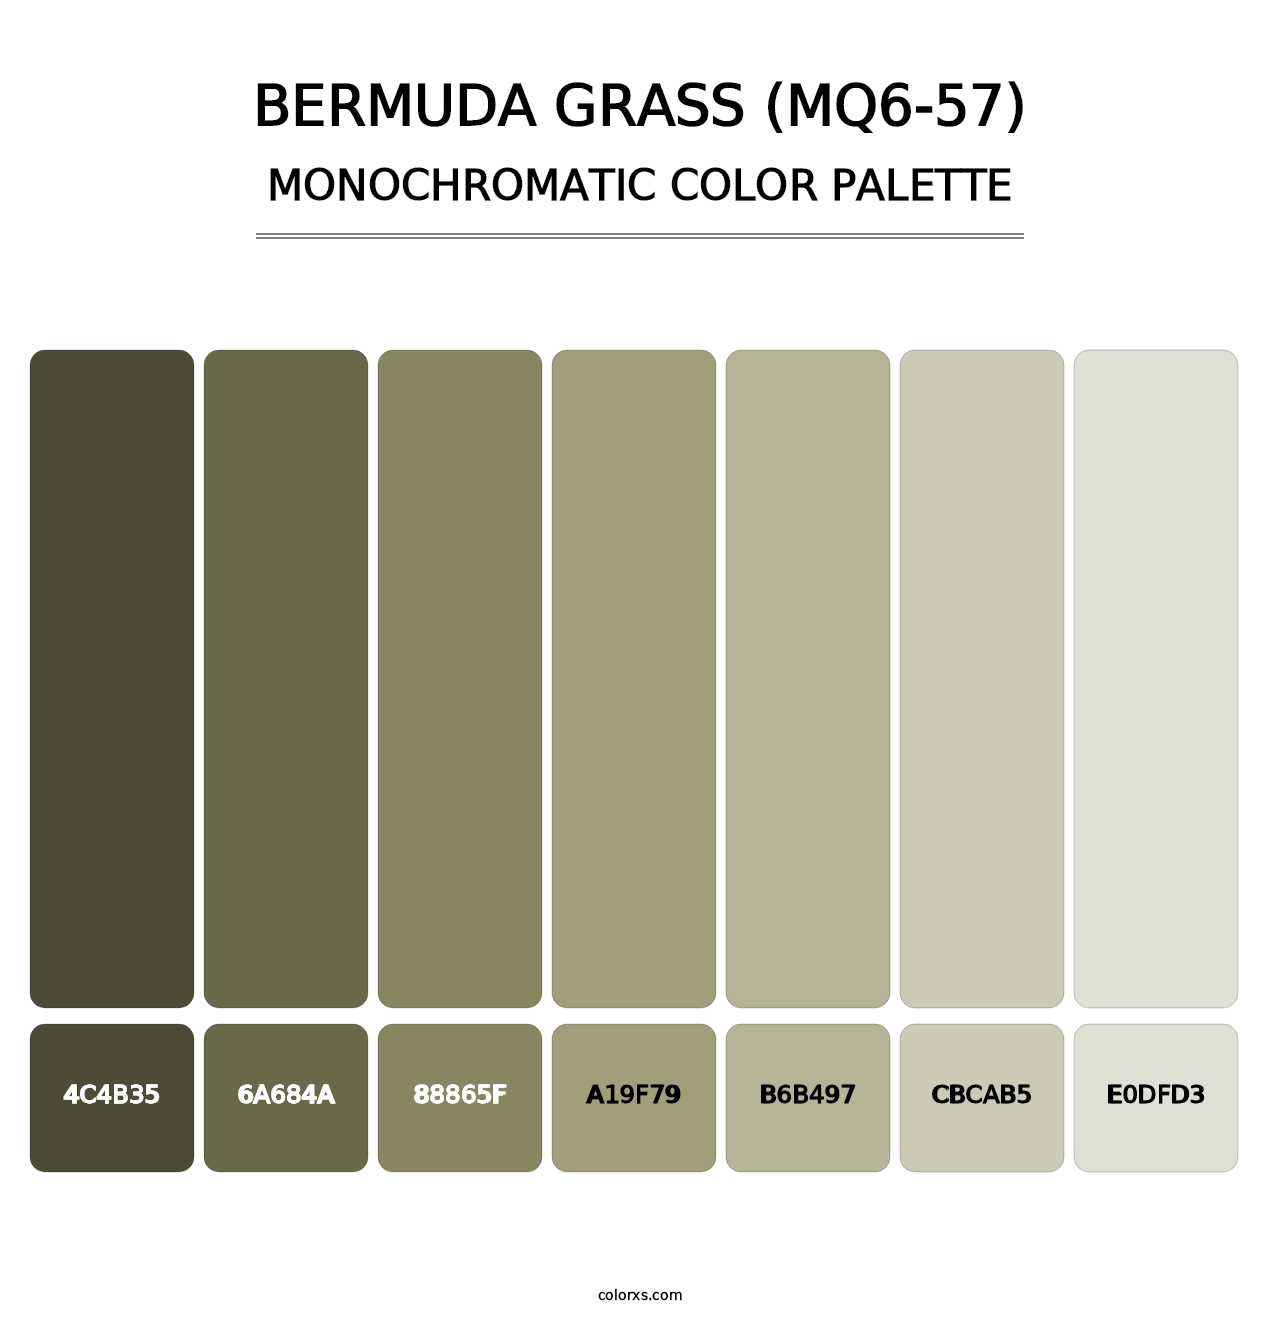 Bermuda Grass (MQ6-57) - Monochromatic Color Palette